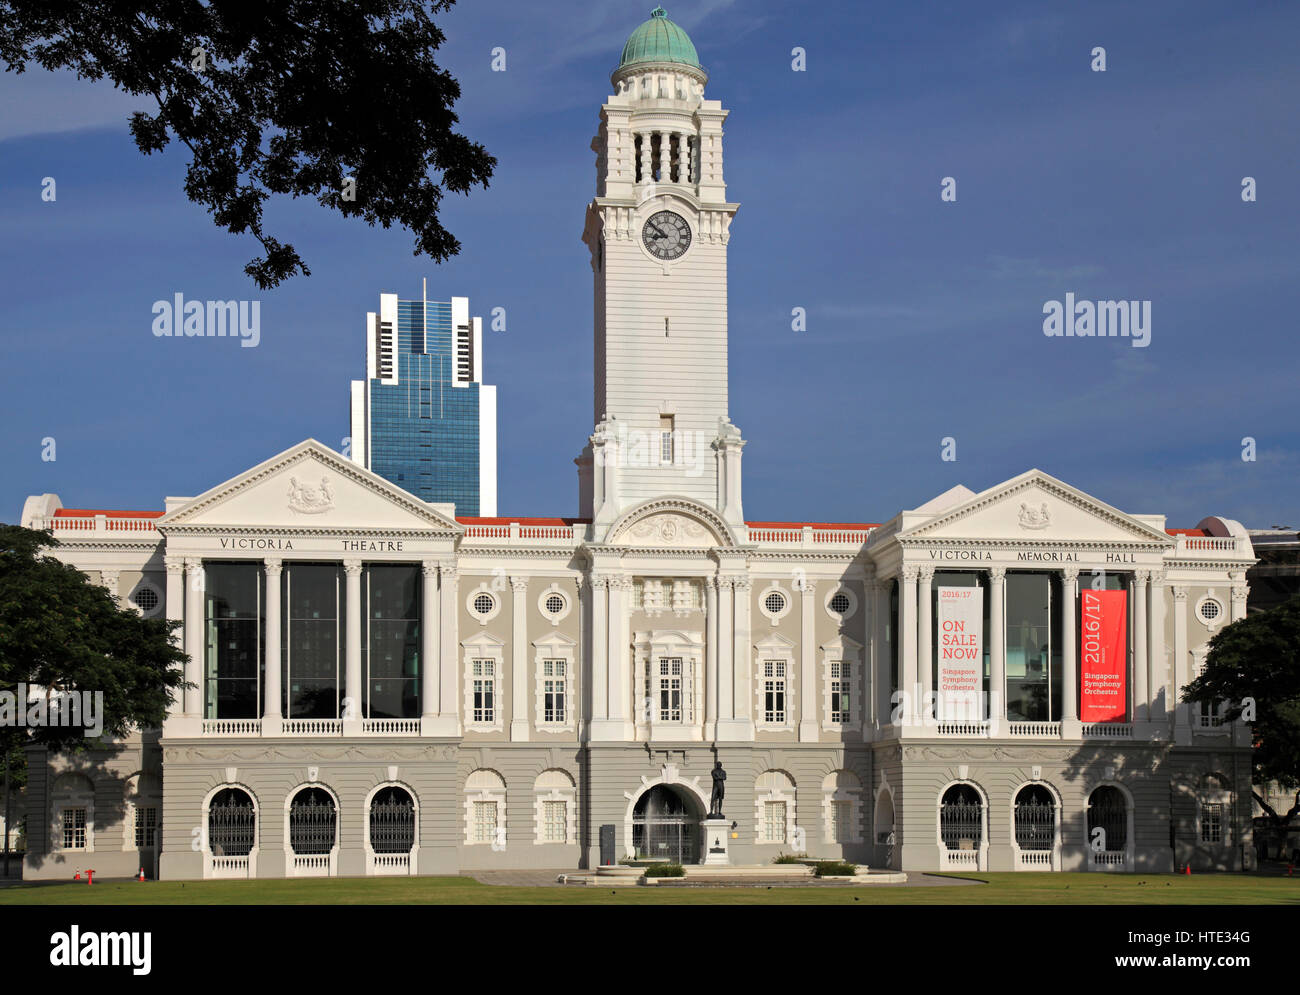 Singapore, Victoria Theatre, Victoria Memorial Hall, Stock Photo